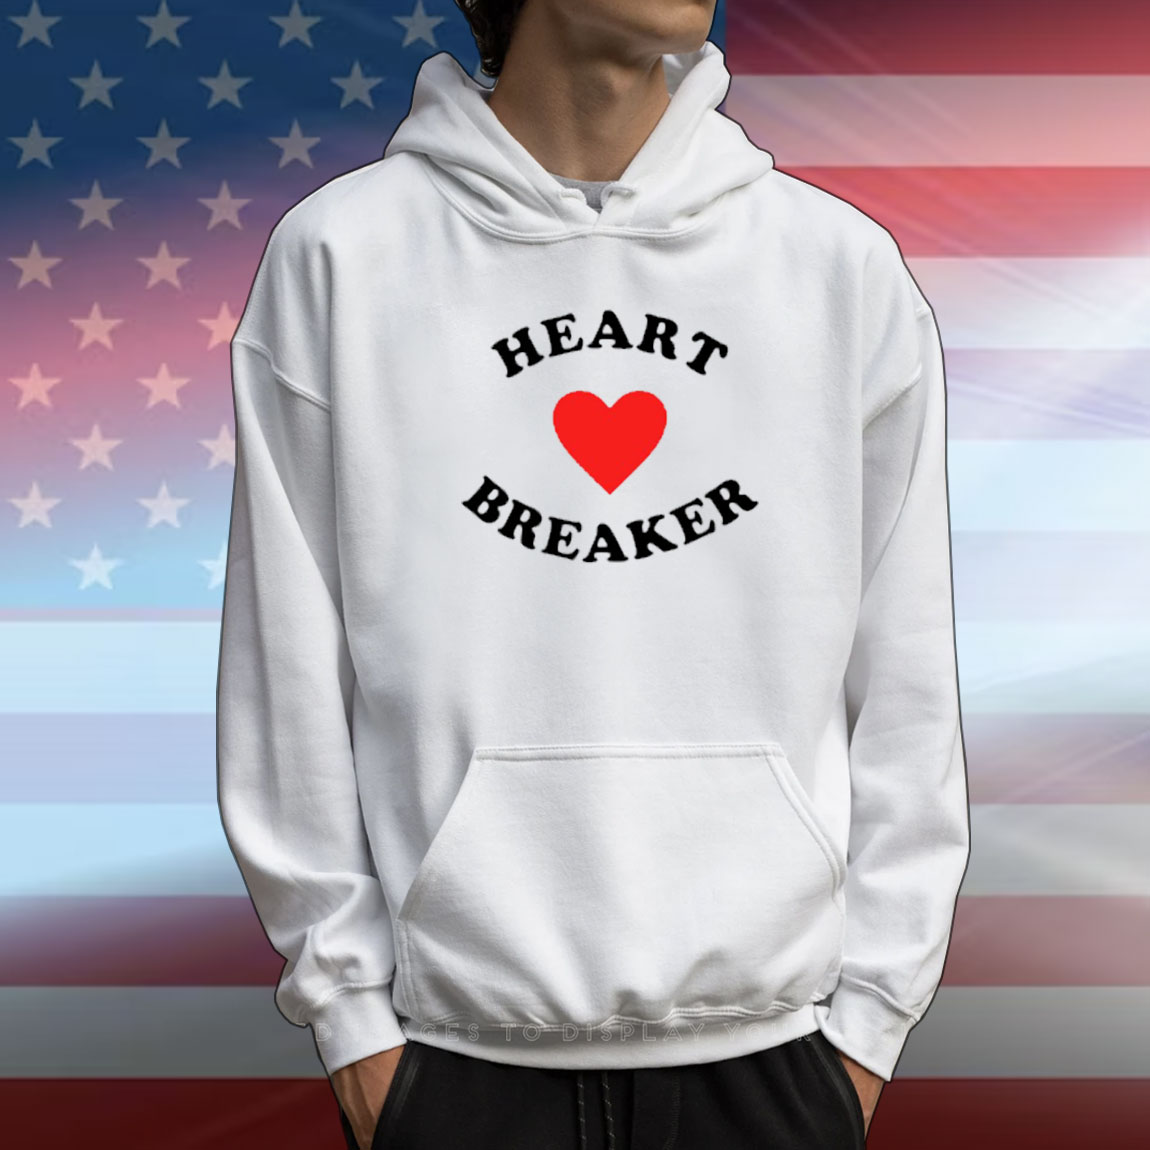 Mollymoonnn Heart Breaker T-shirt